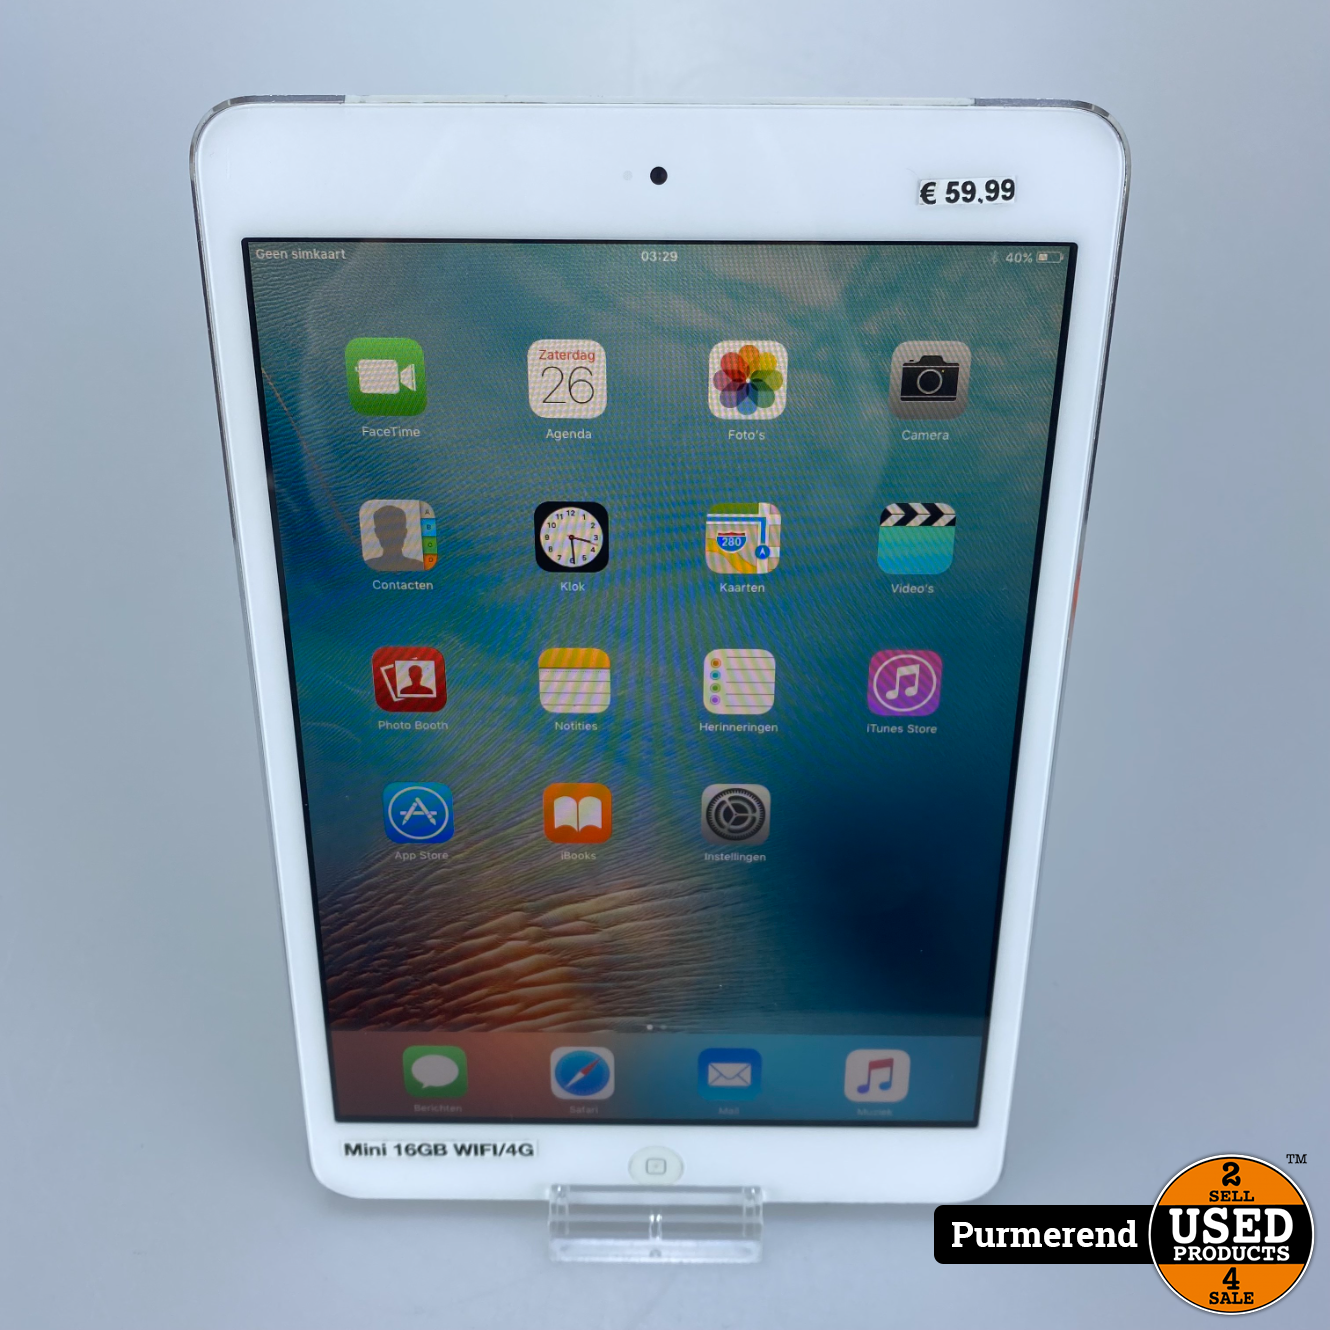 Plons Wegenbouwproces zwaan iPad Mini 16GB Zilver WIFI/4G - Used Products Purmerend